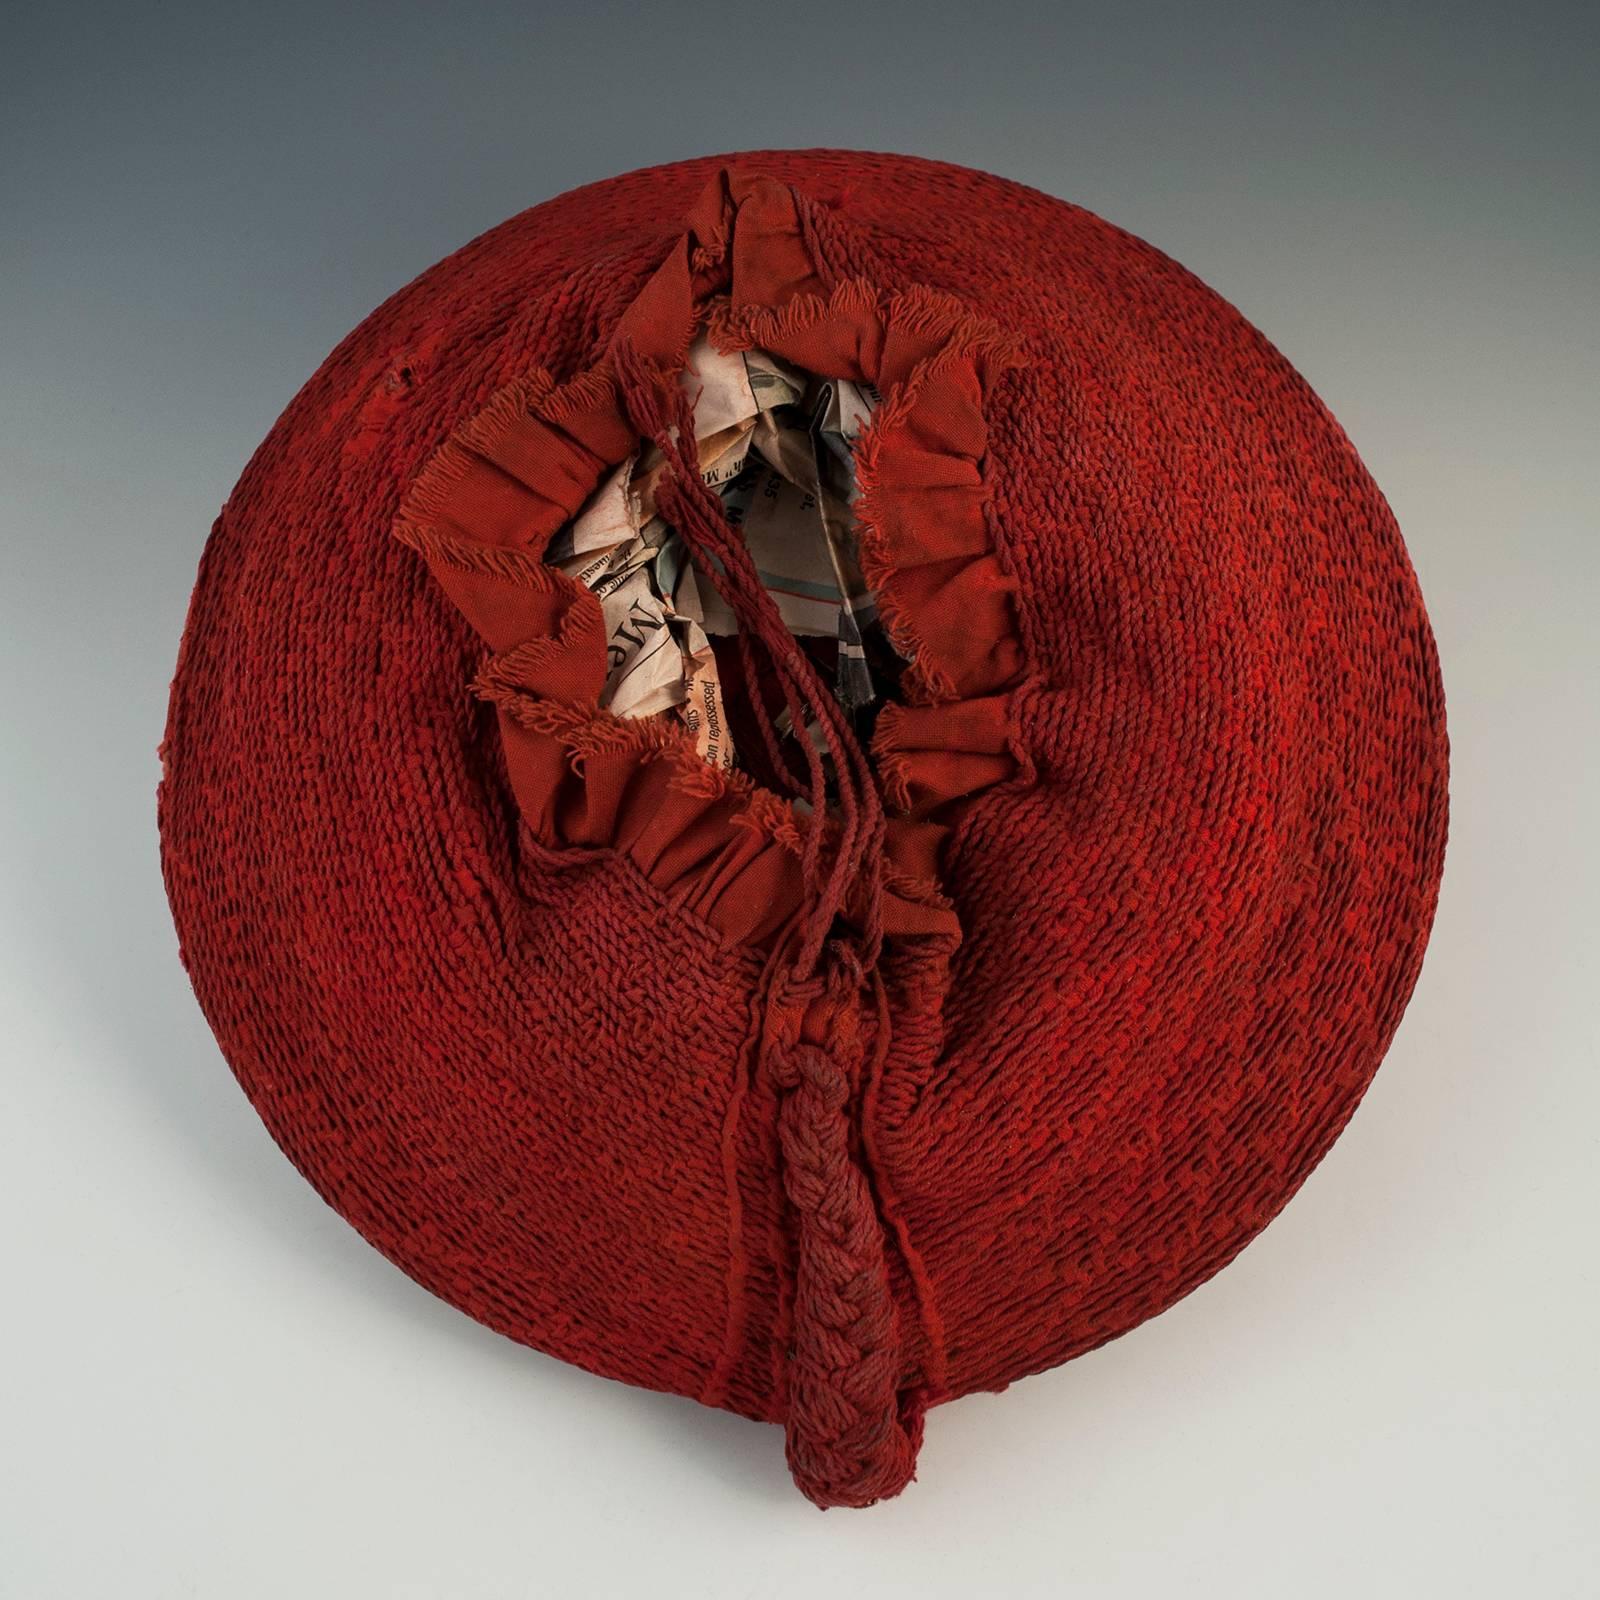 Mitte des 20. Jahrhunderts Stammesangehörige der Zulu-Frauen, gewebter roter Baumwollhut, Isicholo, aus Südafrika.

Die ungewöhnliche Spiralbindung auf diesem Baumwoll-Isicholo macht ihn zu einem schönen und seltenen Beispiel für die Hüte, die bei